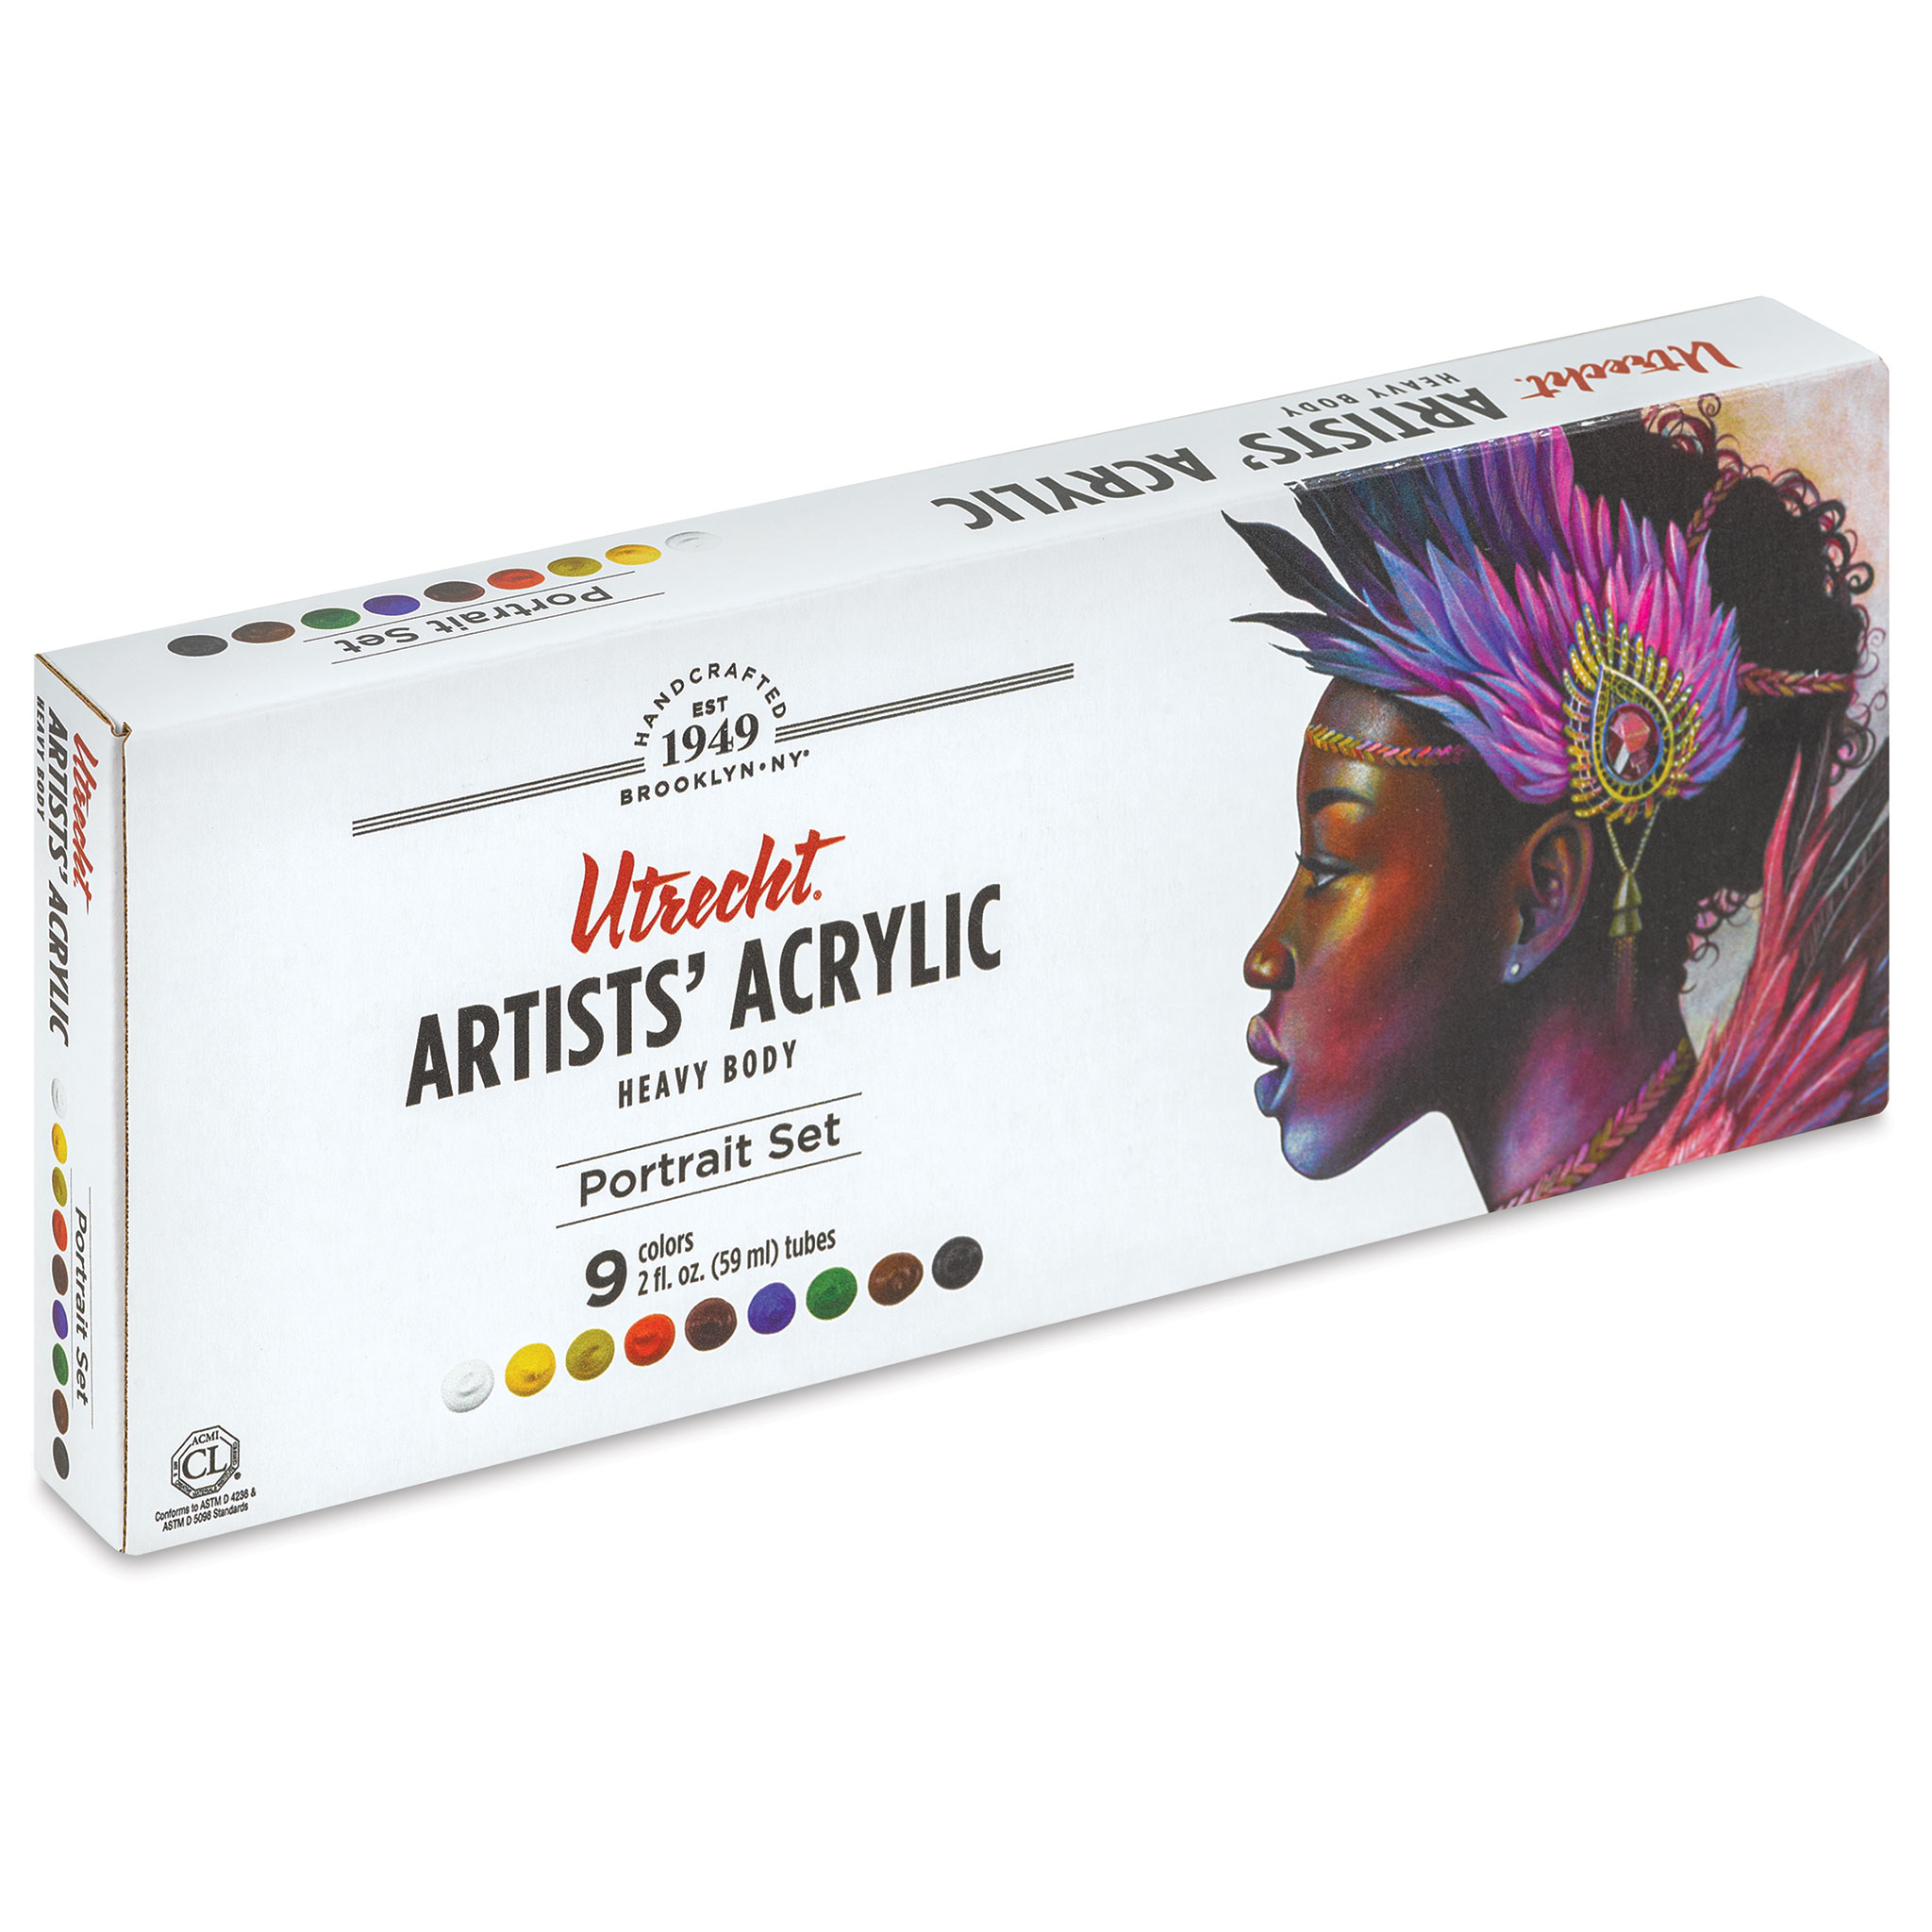 Blick Artists' Acrylic Set - Portrait Color Set, 2 oz Tubes